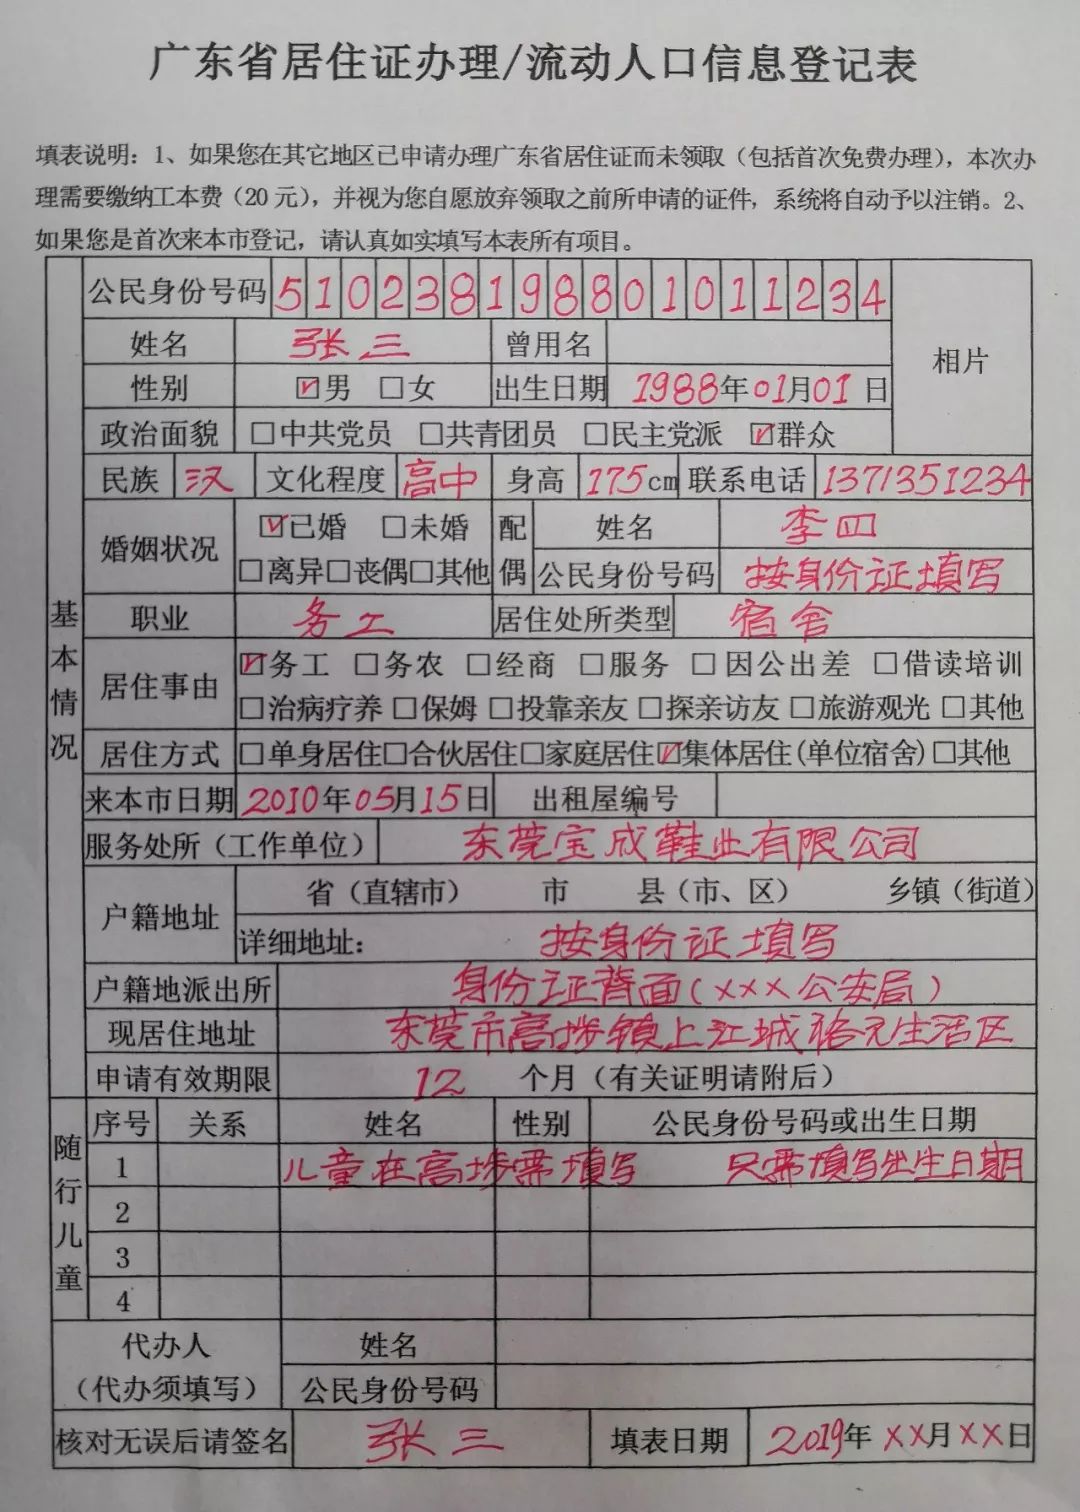 三,详细说明: 附件1:广东省居住证流动人口信息登记表填写格式: 附件